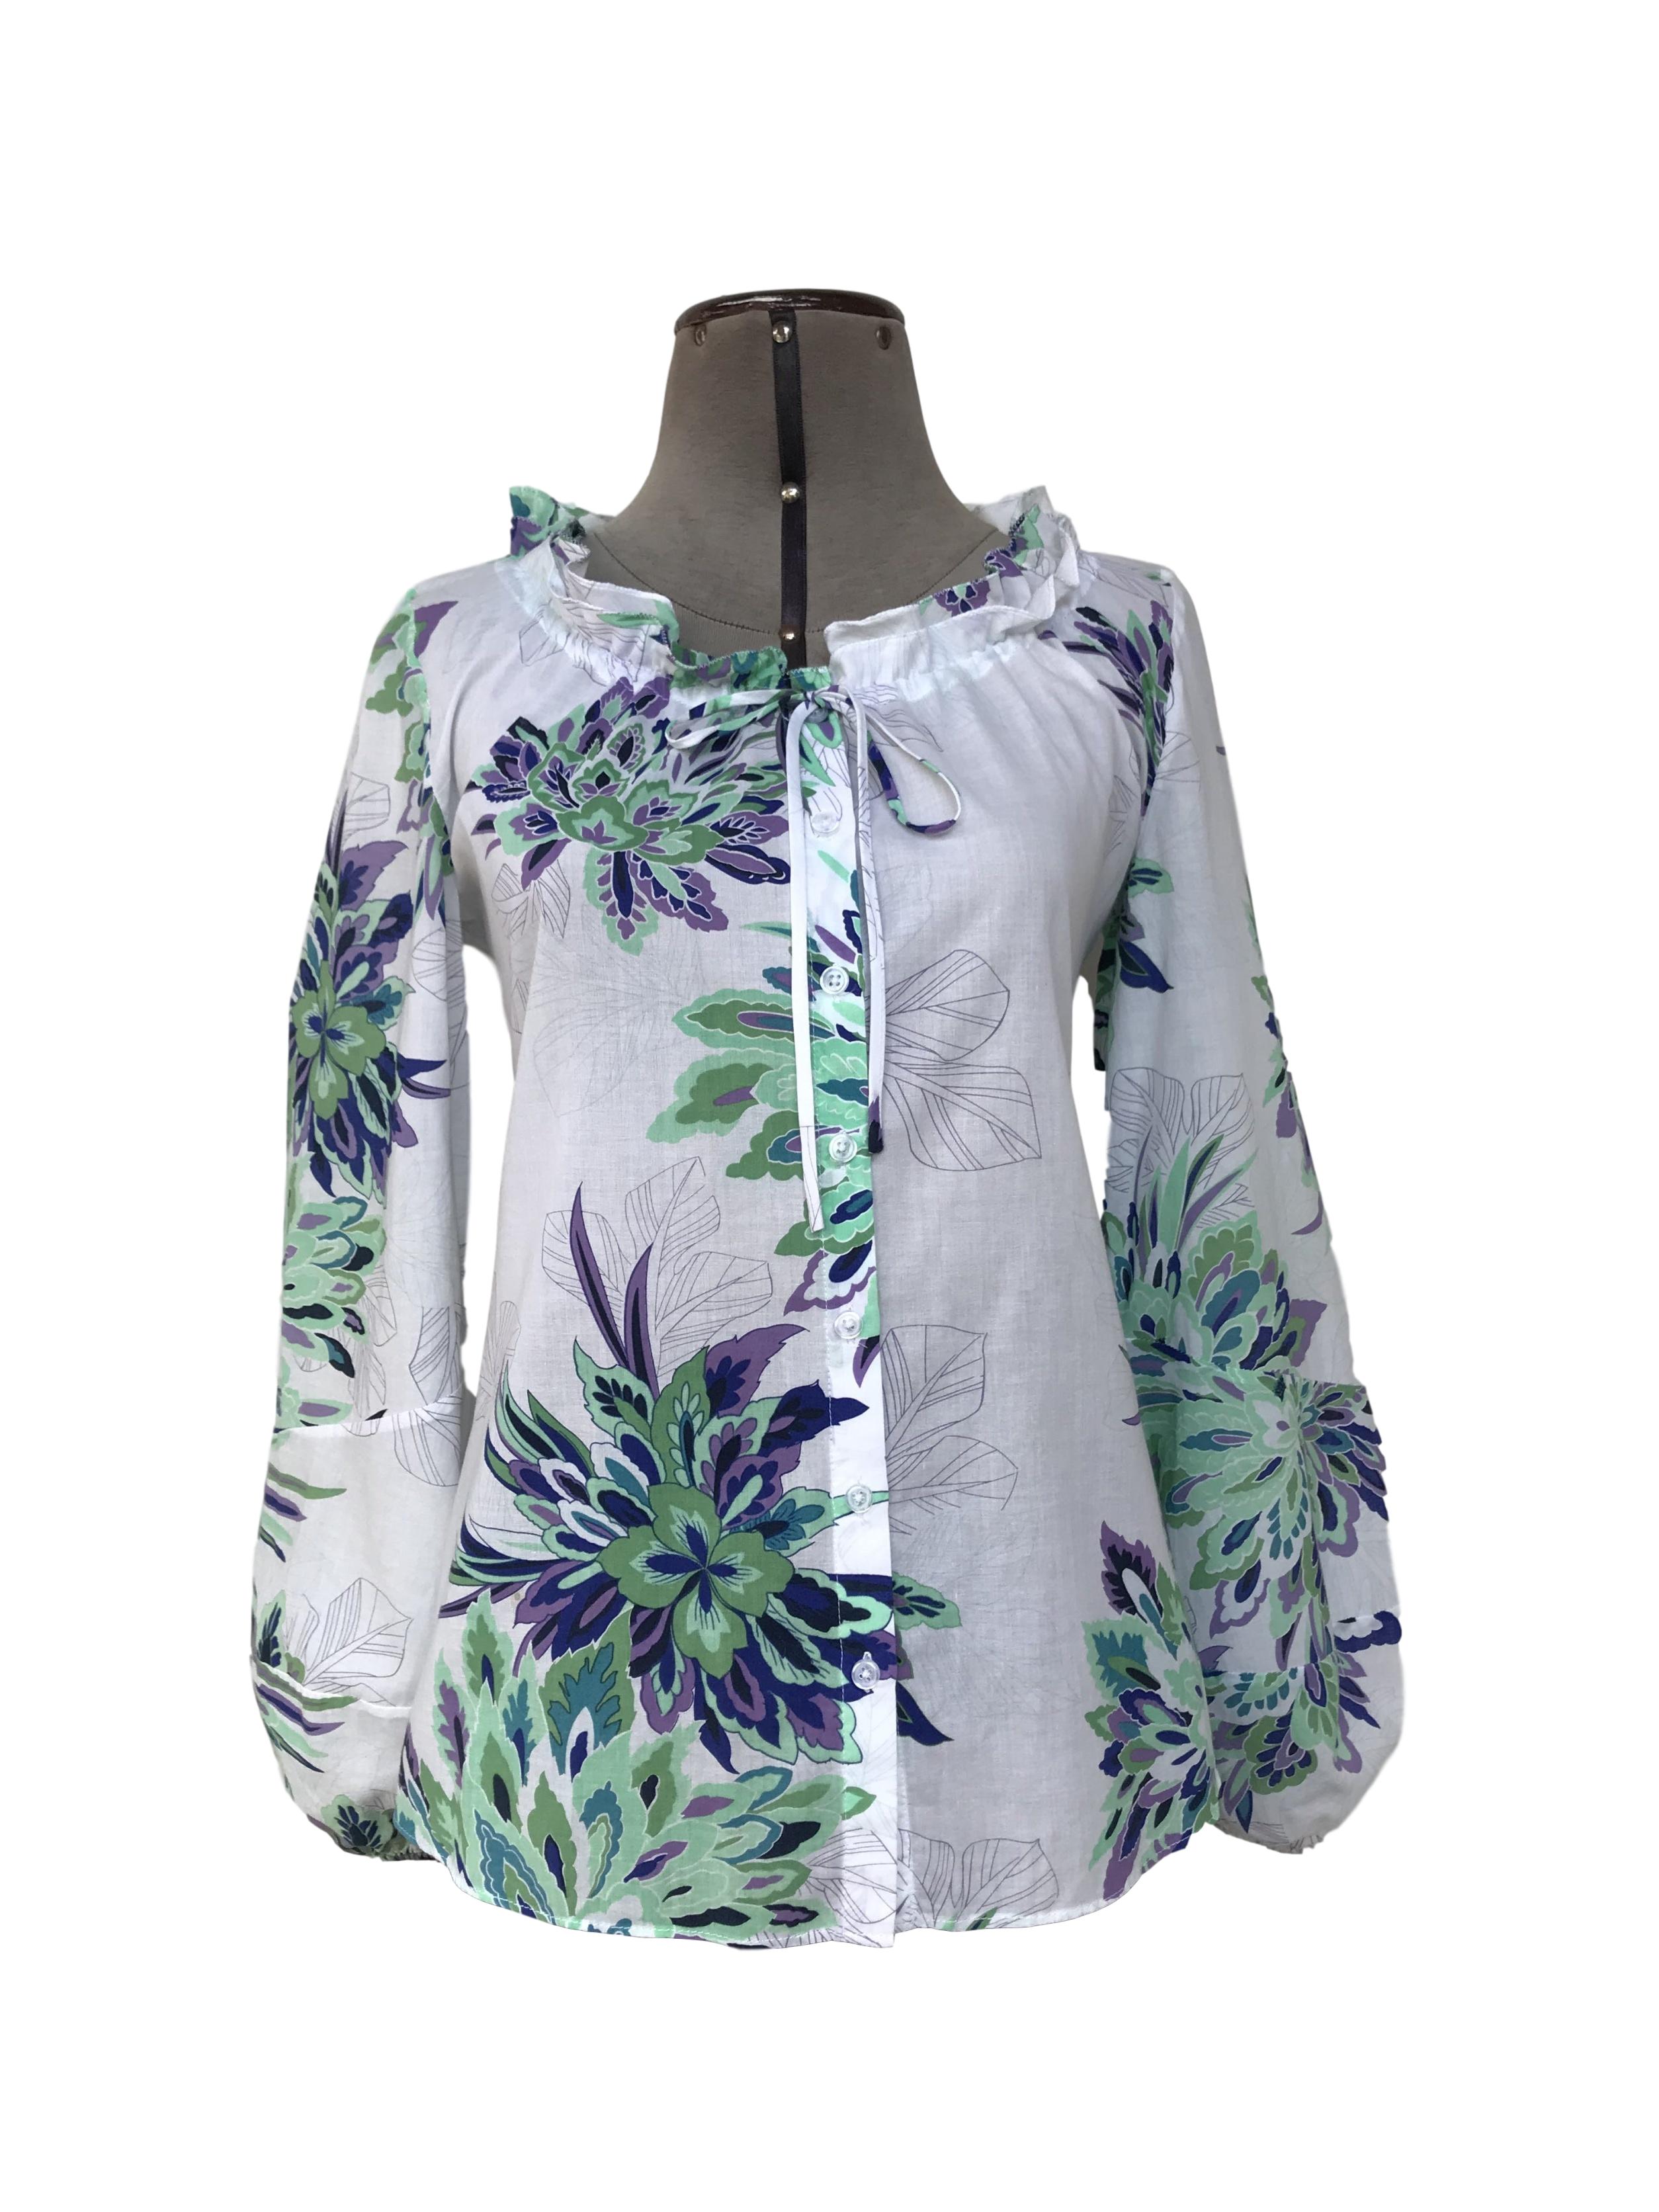 Blusa 100% algodón blanca con estampado de flores verdes y moradas, fila de botones centrales, cuello recogido con pasador y mangas bombachas con elástico en puños
Talla M